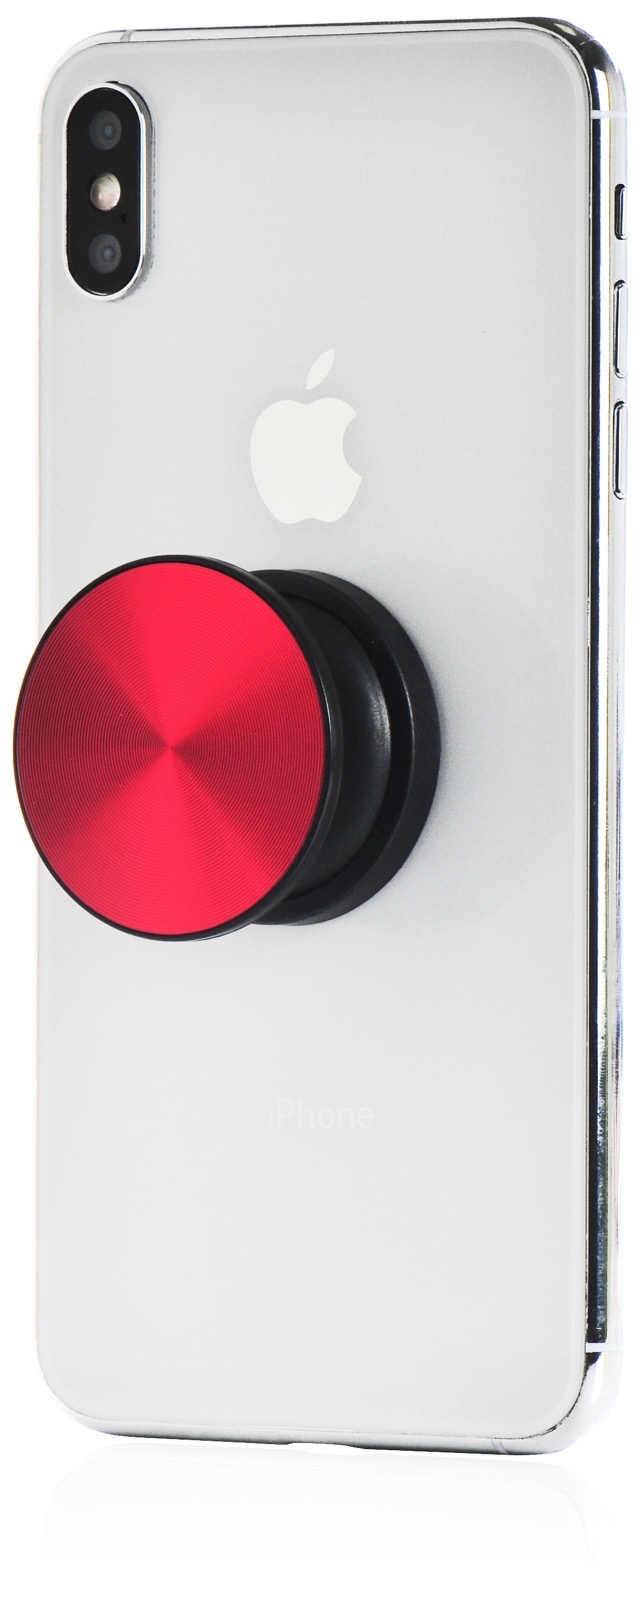 фото Кольцо-держатель для телефона Gurdini Classic Stile red попсокет, красный